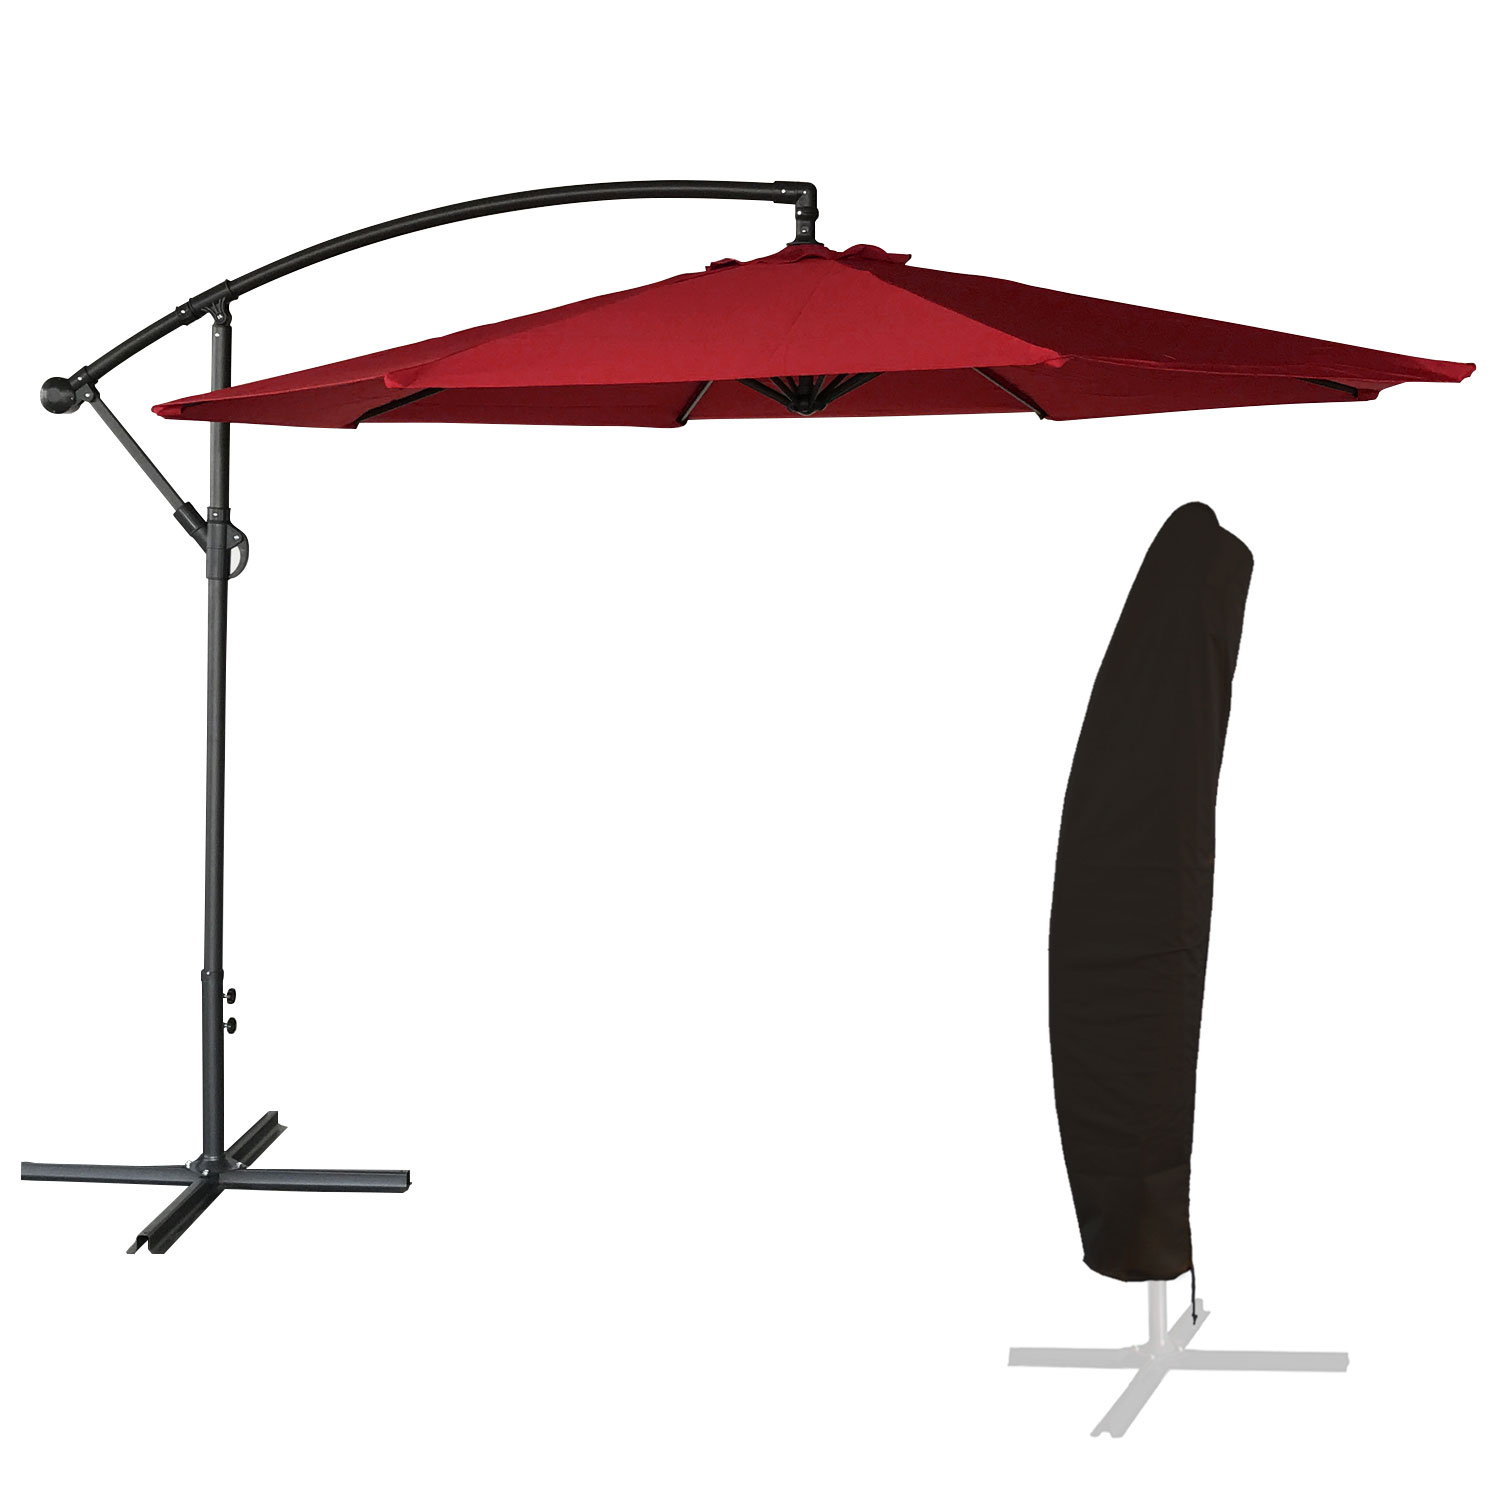 OAHU ombrellone rotondo diametro 3,50m rosso + copertura